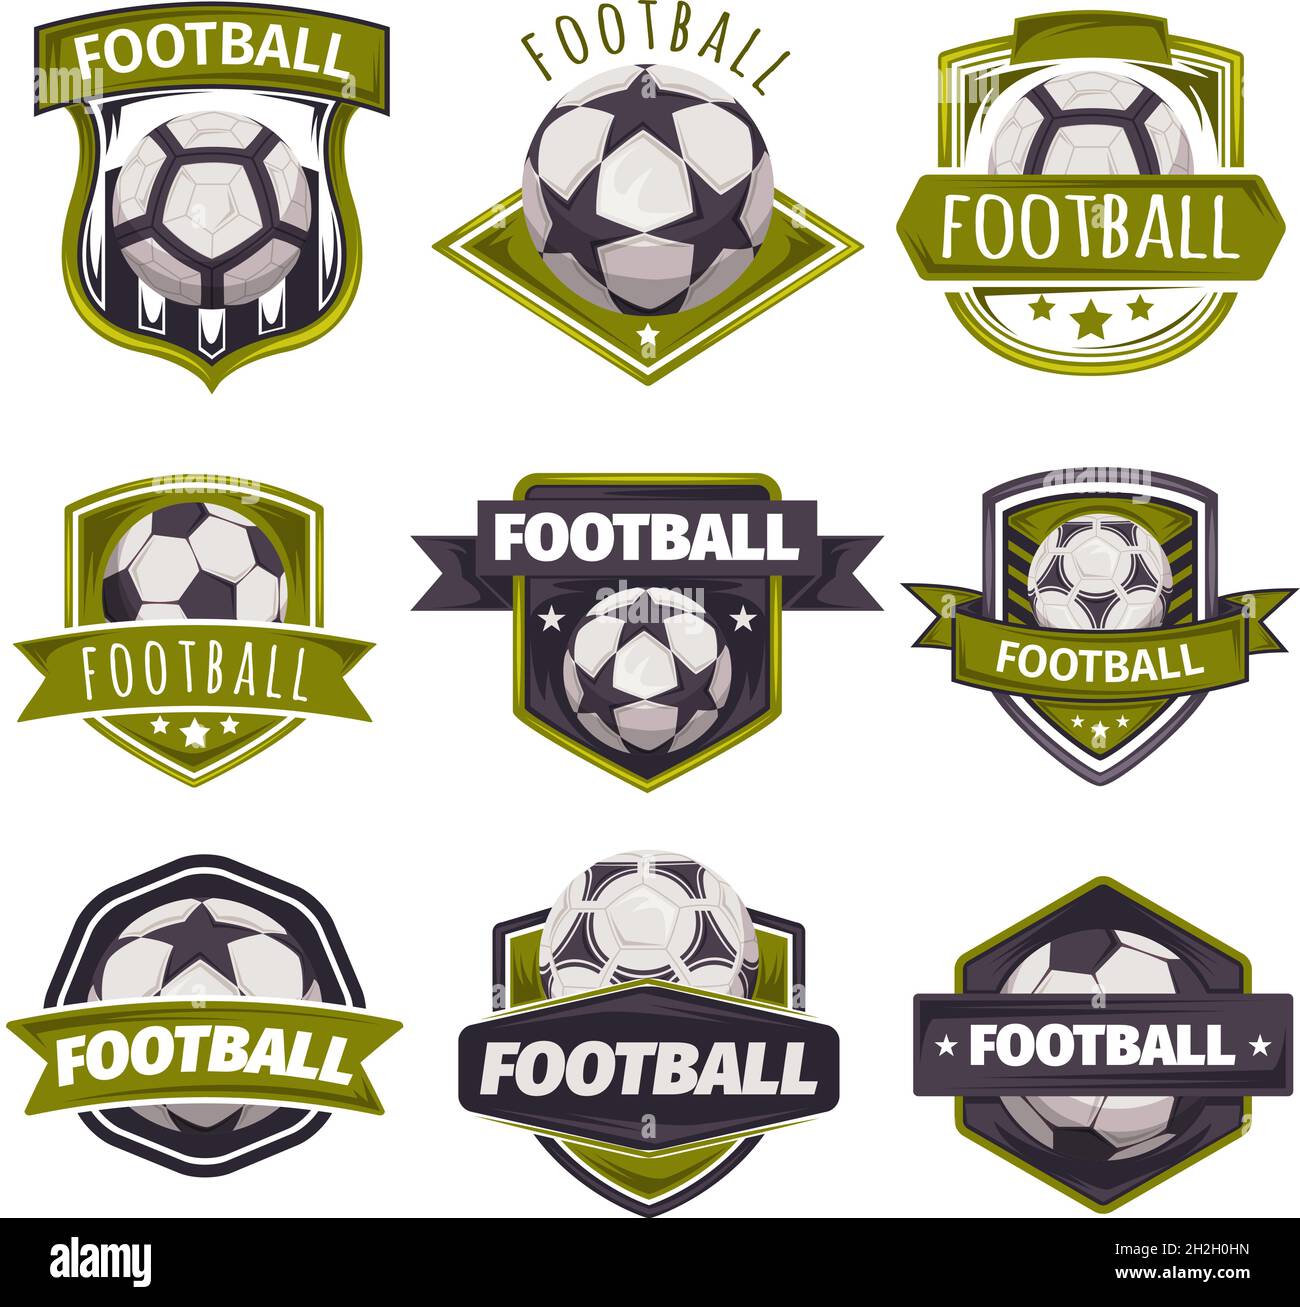 Satz von Logos, Embleme zum Thema Fußball, Fußball. Stock Vektor